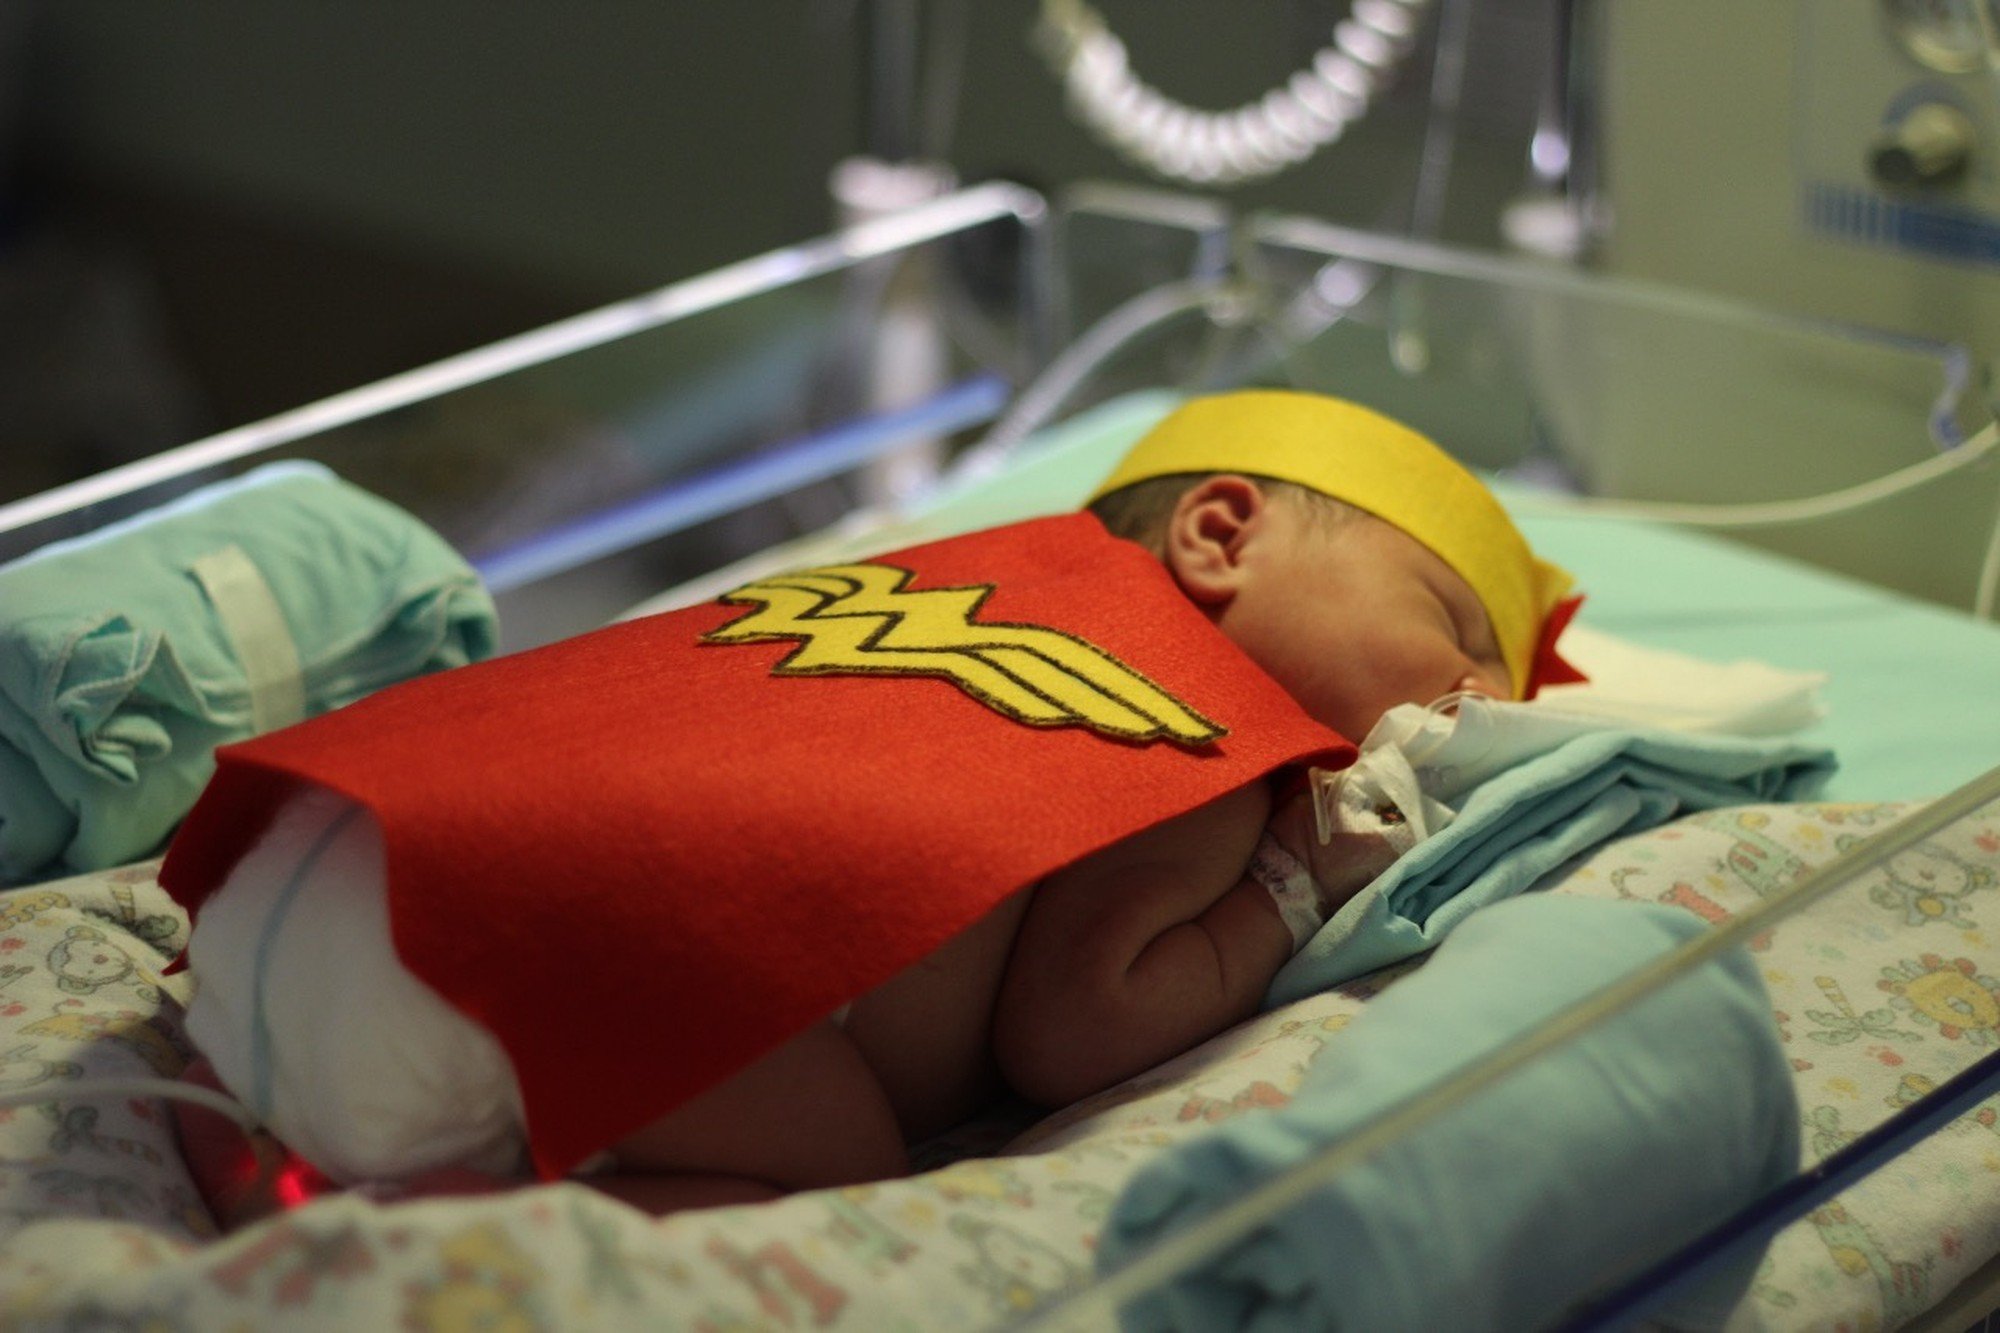 whatsapp image 2018 10 12 at 14 29 39.jpeg?resize=412,275 - Bebês de UTI neonatal são vestidos como super-heróis para celebrar o Dia das Crianças